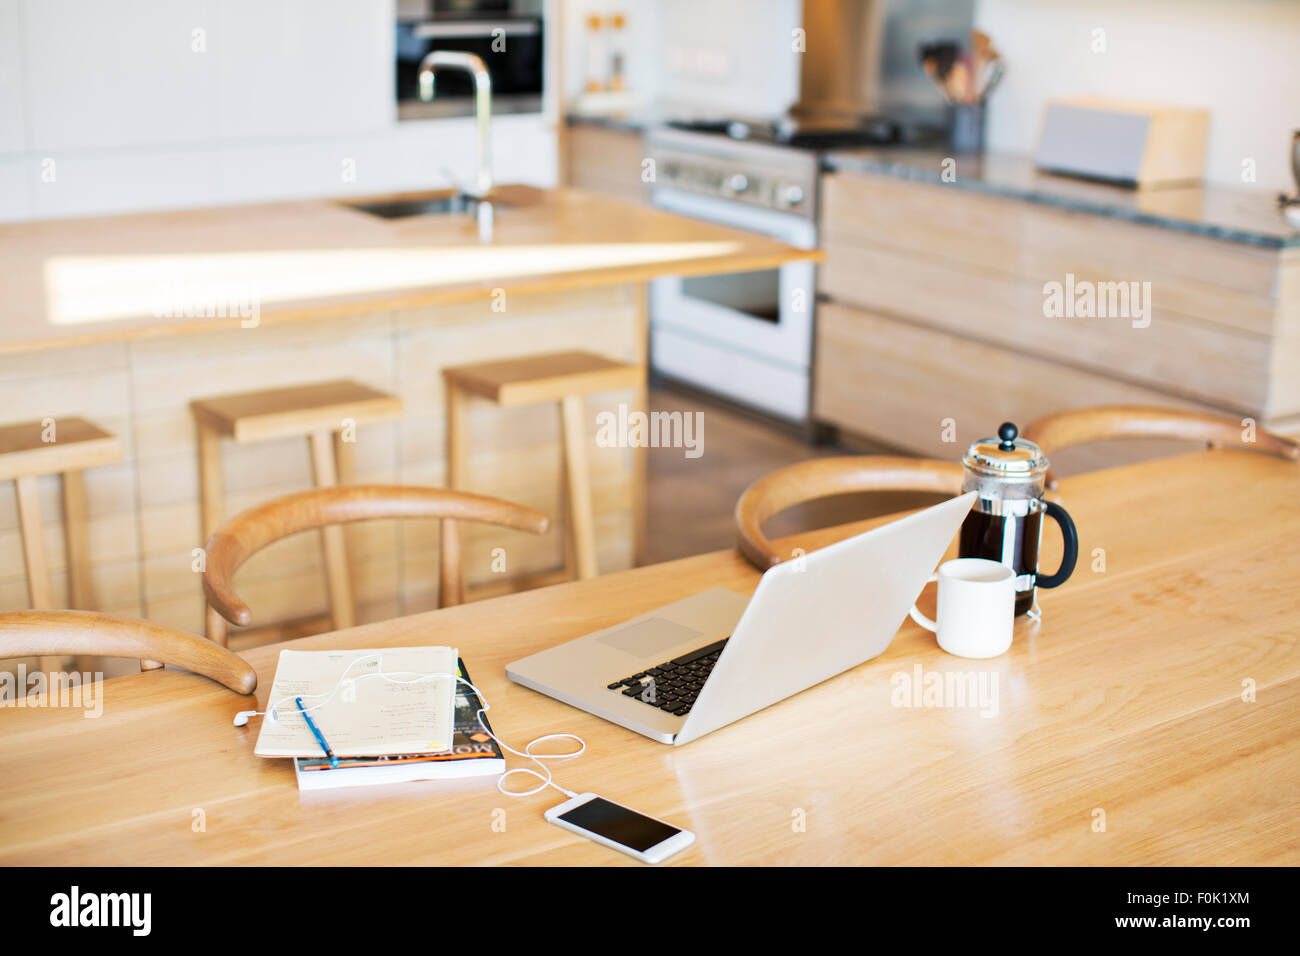 Ordinateur portable, presse, café, téléphone cellulaire et ordinateur portable sur une table de cuisine Banque D'Images